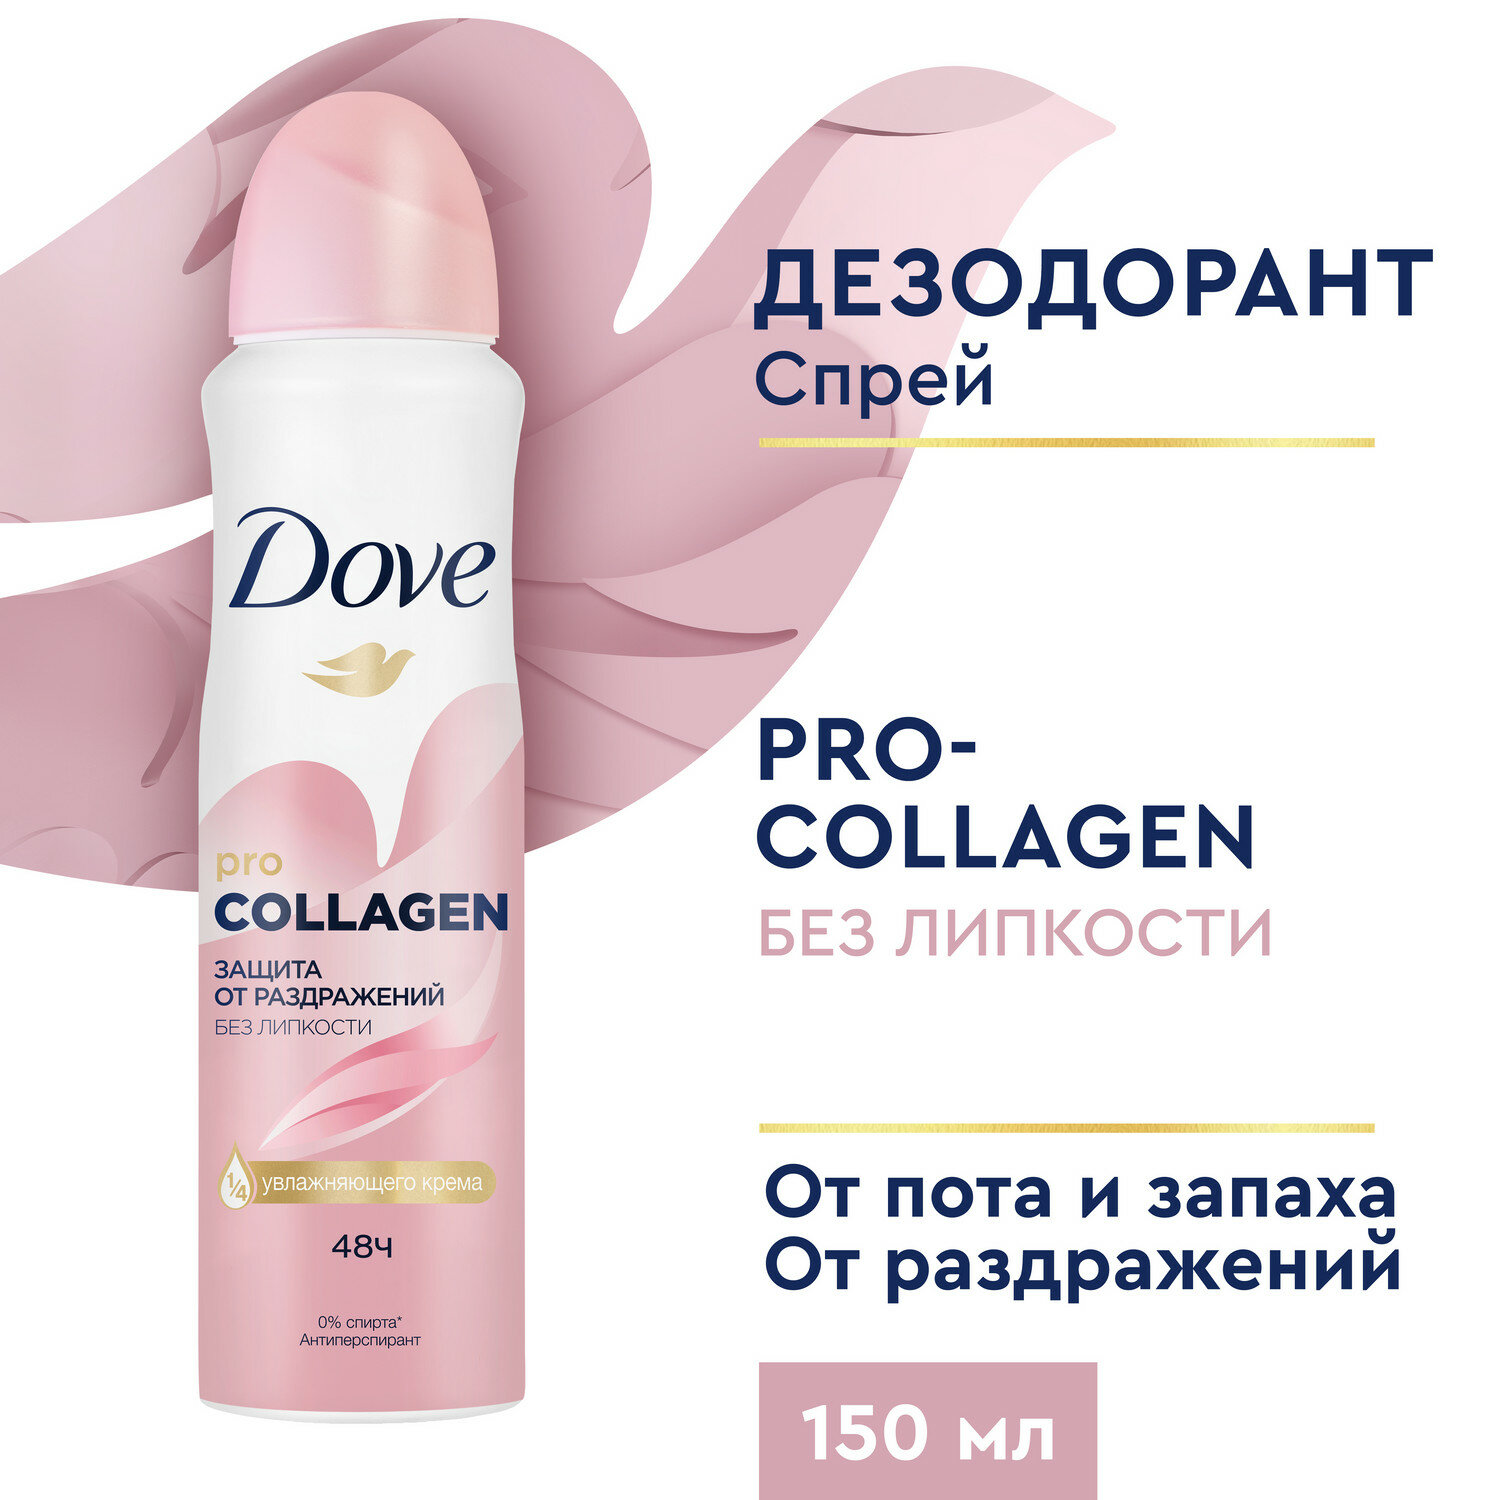 Dove Антиперспирант защита от раздражений без липкости с Pro-collagen комплекс, спрей, 150 мл